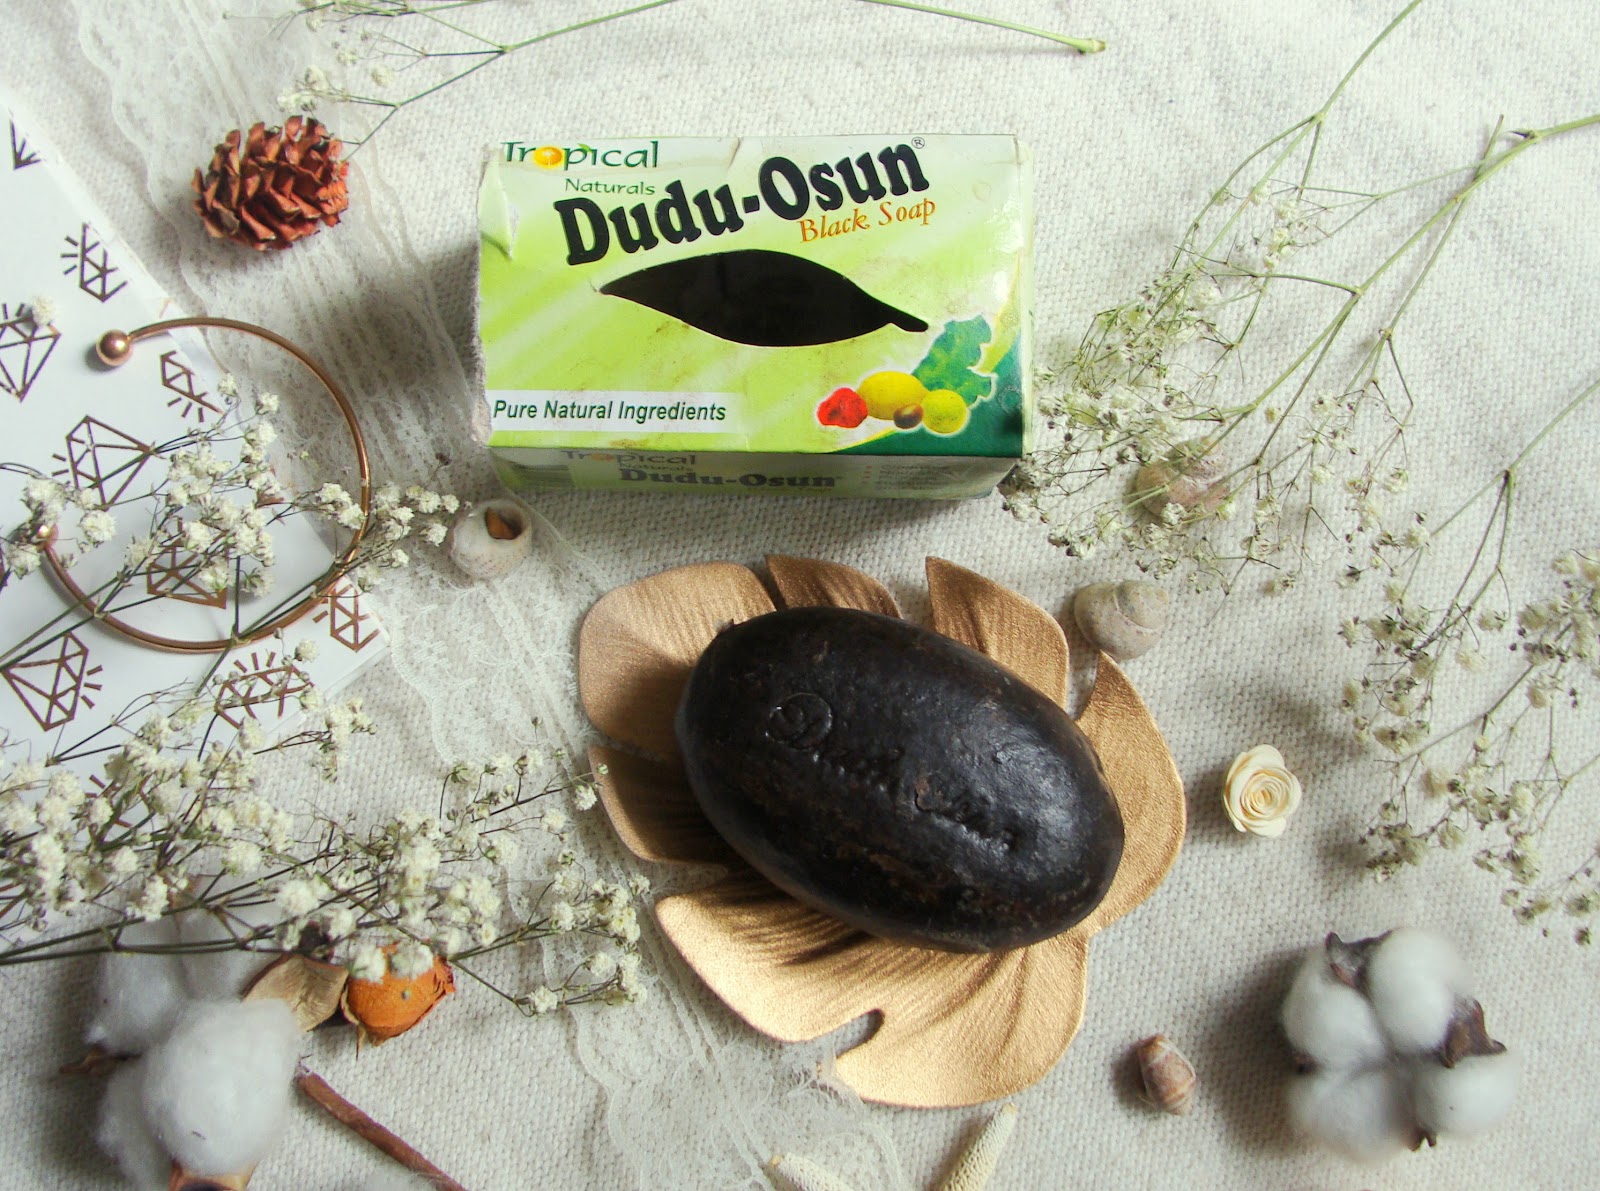 lawendowam lifestyle blog: DUDU-OSUN -czarne mydło, czyli mój idealny sposób na oczyszczanie